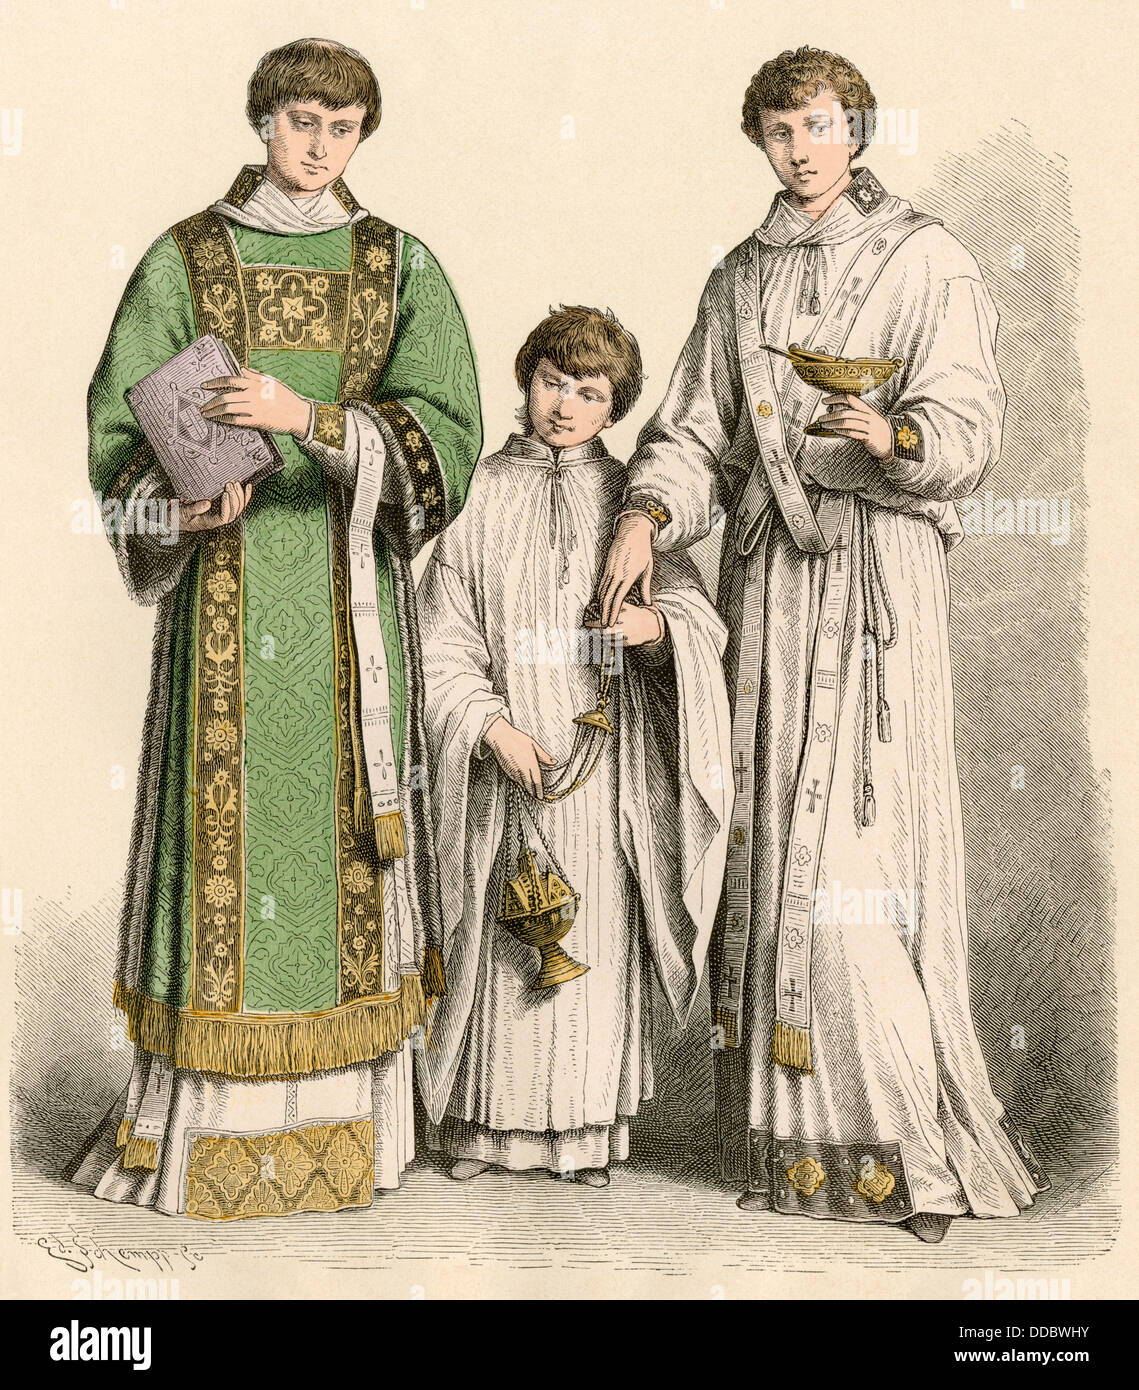 Diacre catholique romain portant une robe dalmatic (à gauche), un altarboy, et d'un diacre, années 1500 - années 1600. Impression couleur à la main Banque D'Images